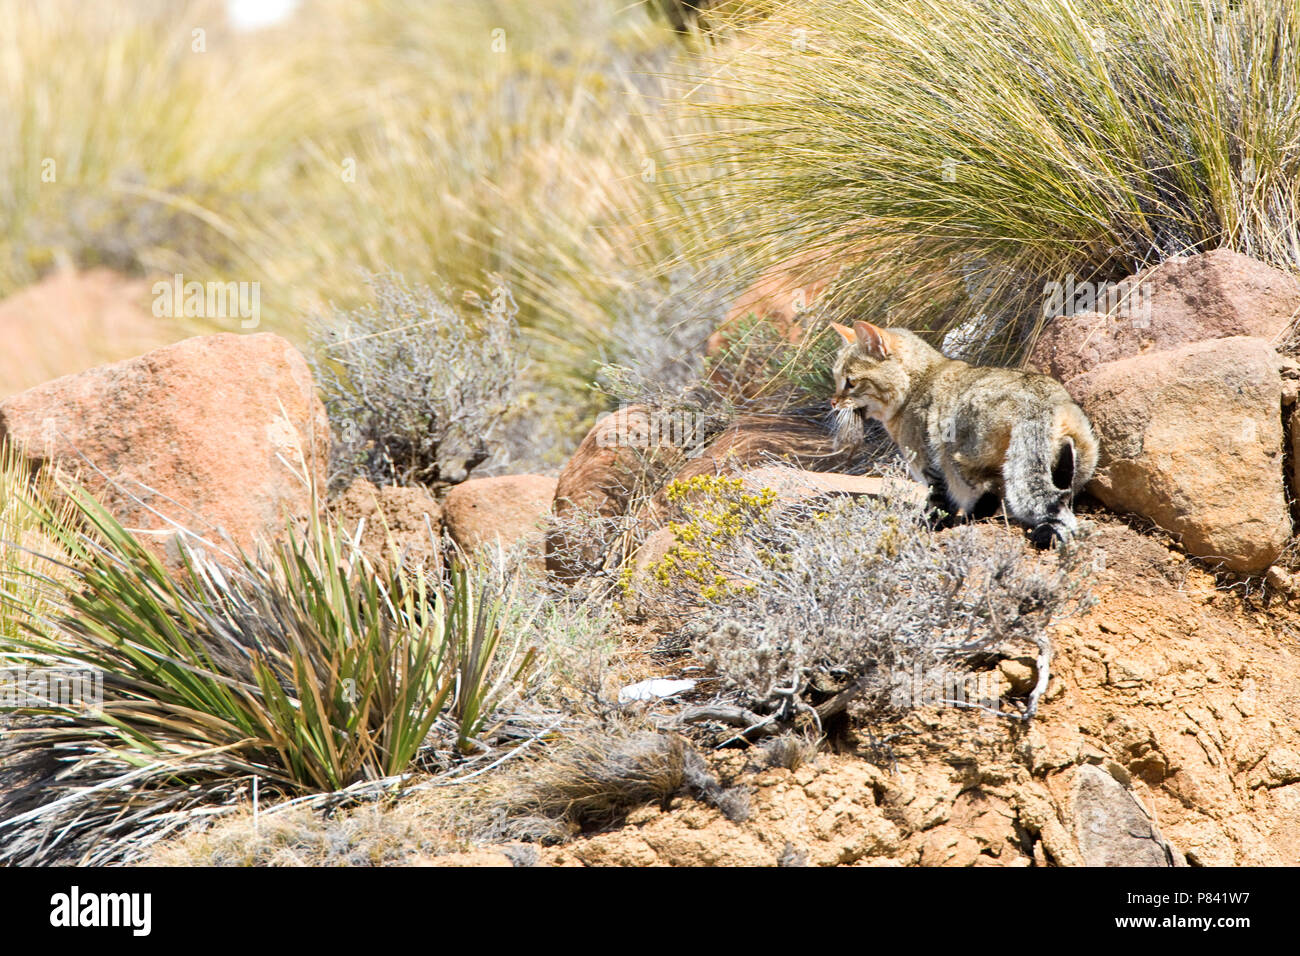 Afrikaanse Wilde Kat op een pudre; gatos salvajes africanos entre rocas Foto de stock